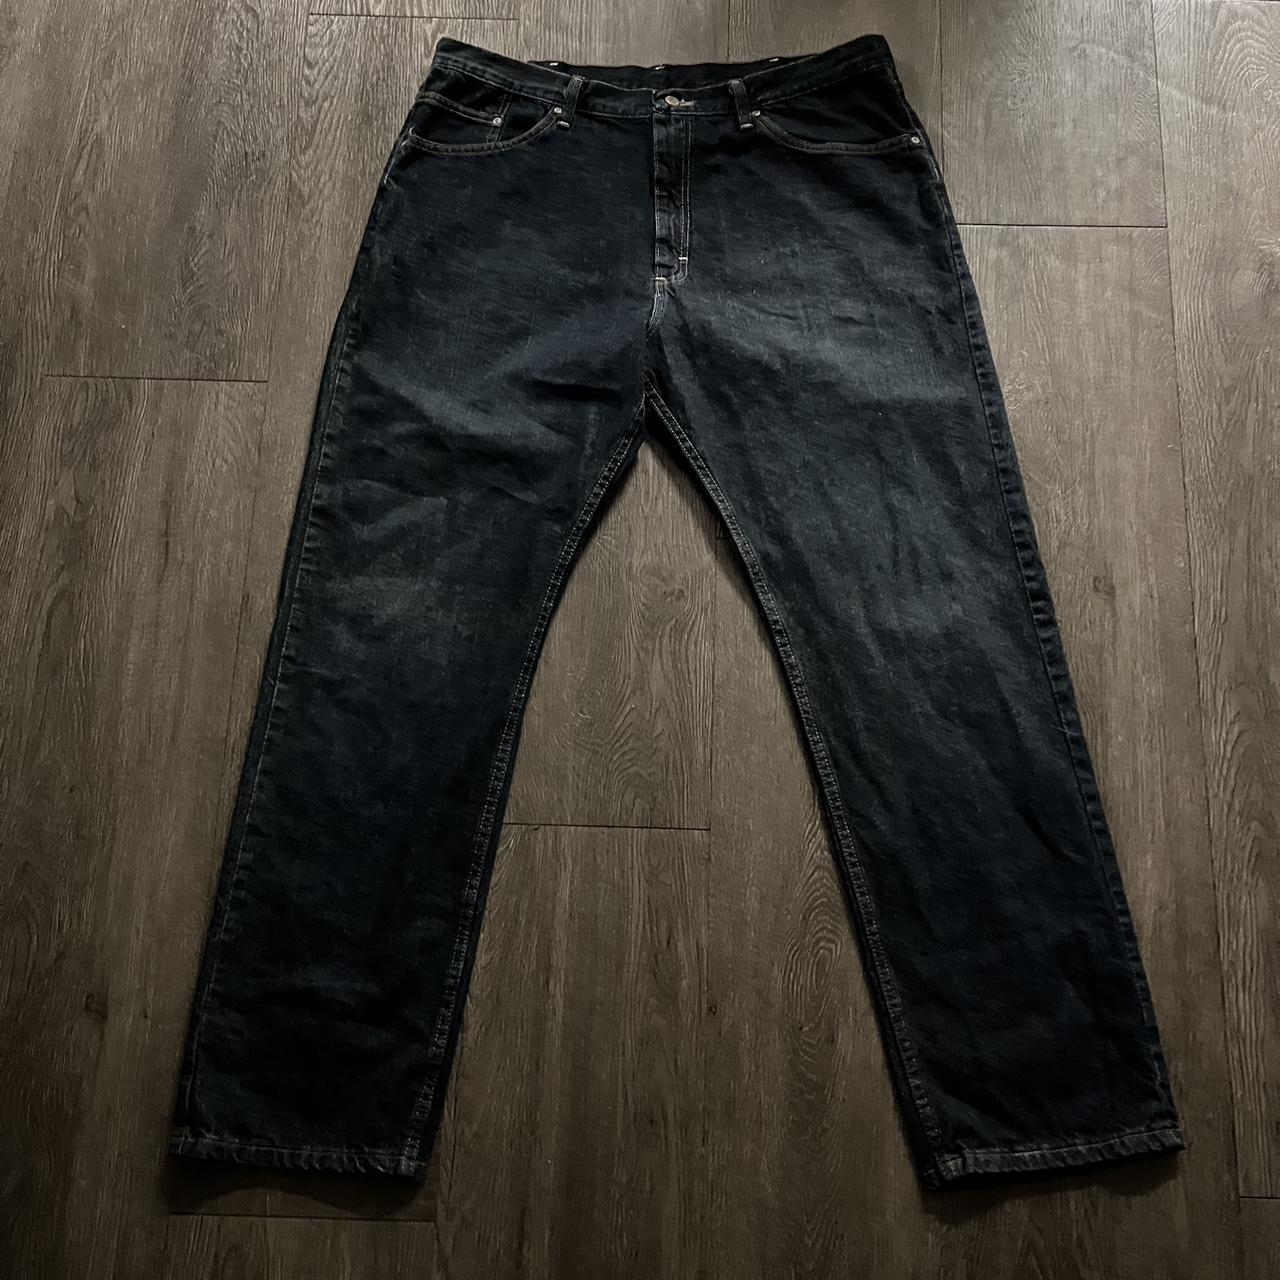 Vintage Washed Baggy Wrangler Jeans Size:... - Depop